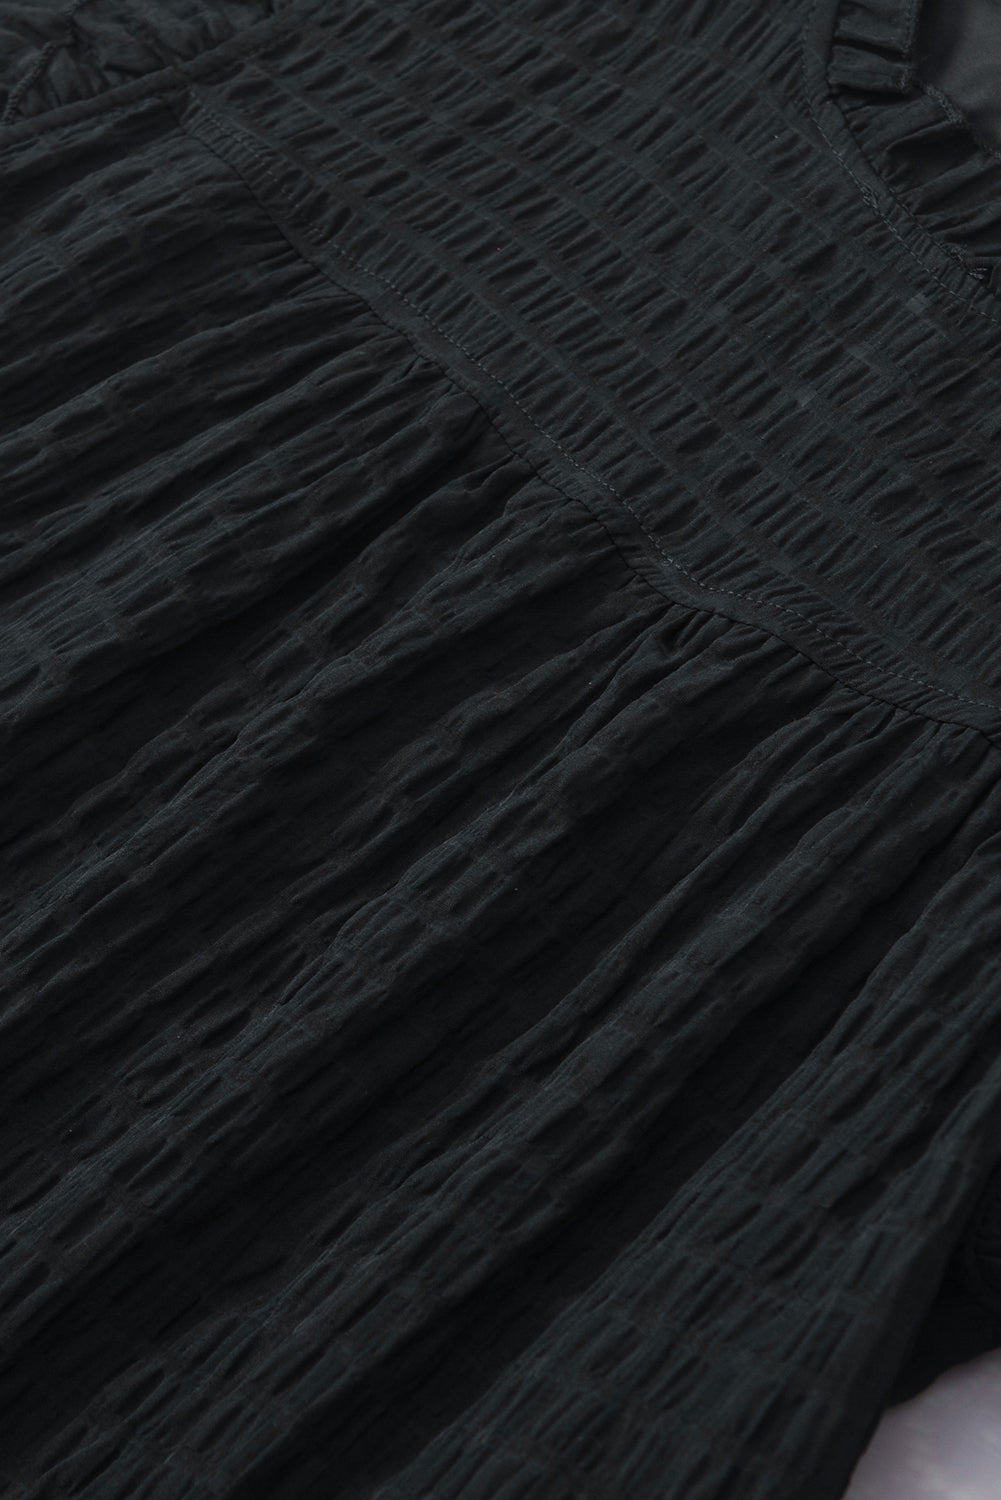 Schwarze Bluse mit ausgehöhlter Struktur und Rüschenärmeln